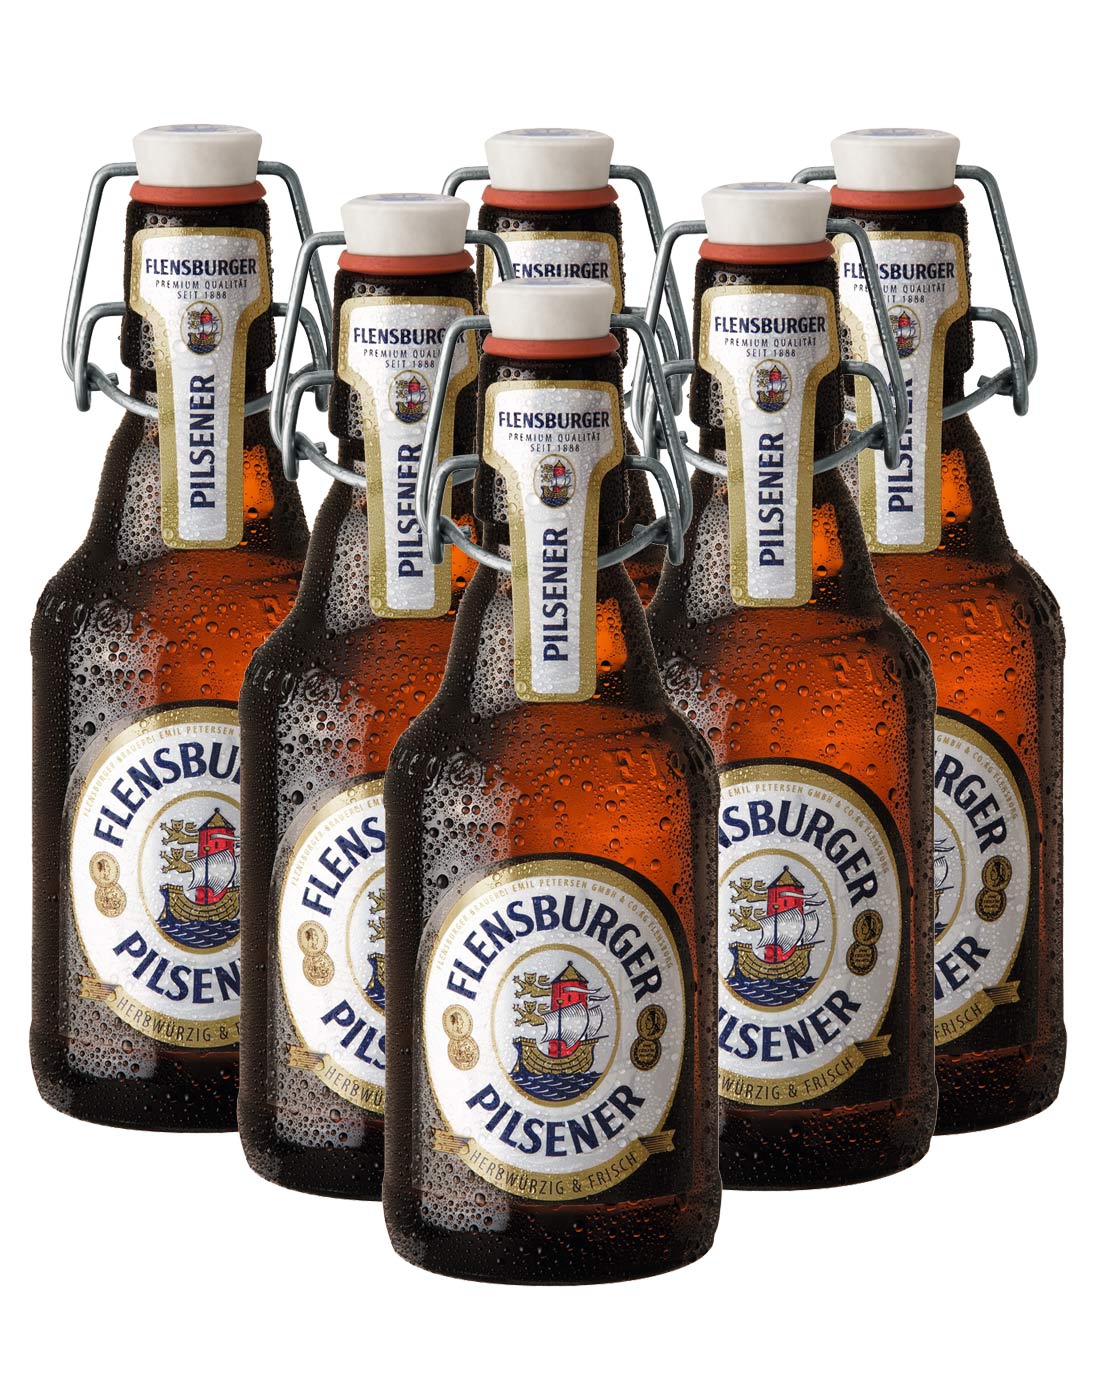 弗伦斯堡啤酒专场干啤酒6瓶(最健康的啤酒\/最